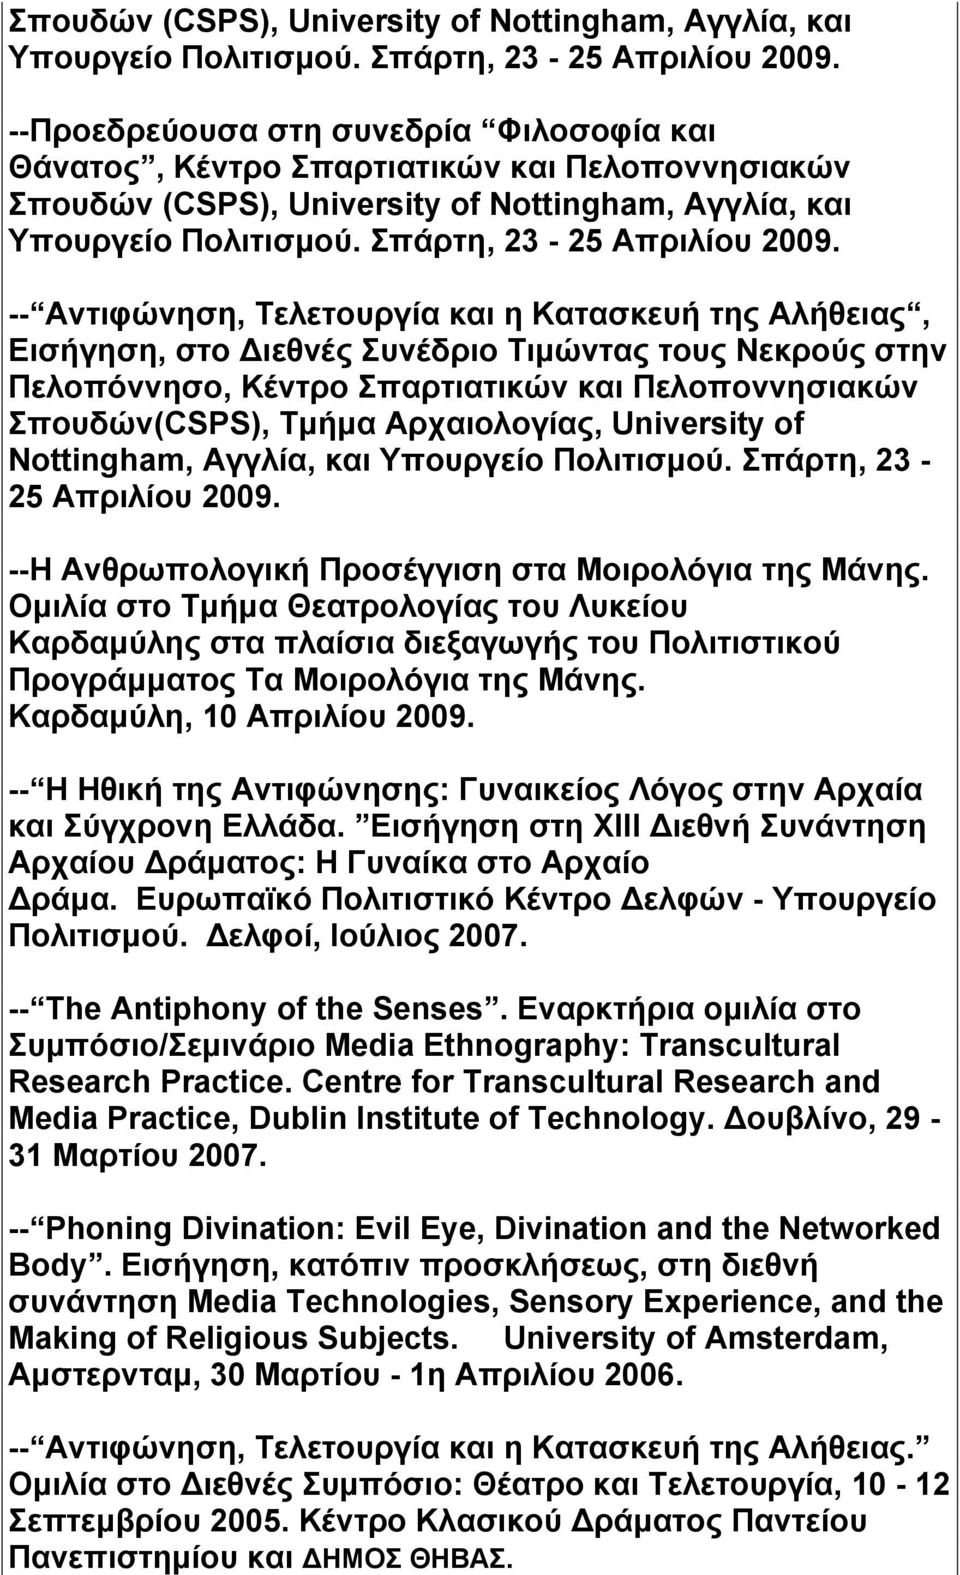 Νεκρούς στην Πελοπόννησο, Κέντρο Σπαρτιατικών και Πελοποννησιακών Σπουδών(CSPS), Τμήμα Αρχαιολογίας, University of Nottingham, Αγγλία, και Υπουργείο Πολιτισμού. Σπάρτη, 23-25 Απριλίου 2009.